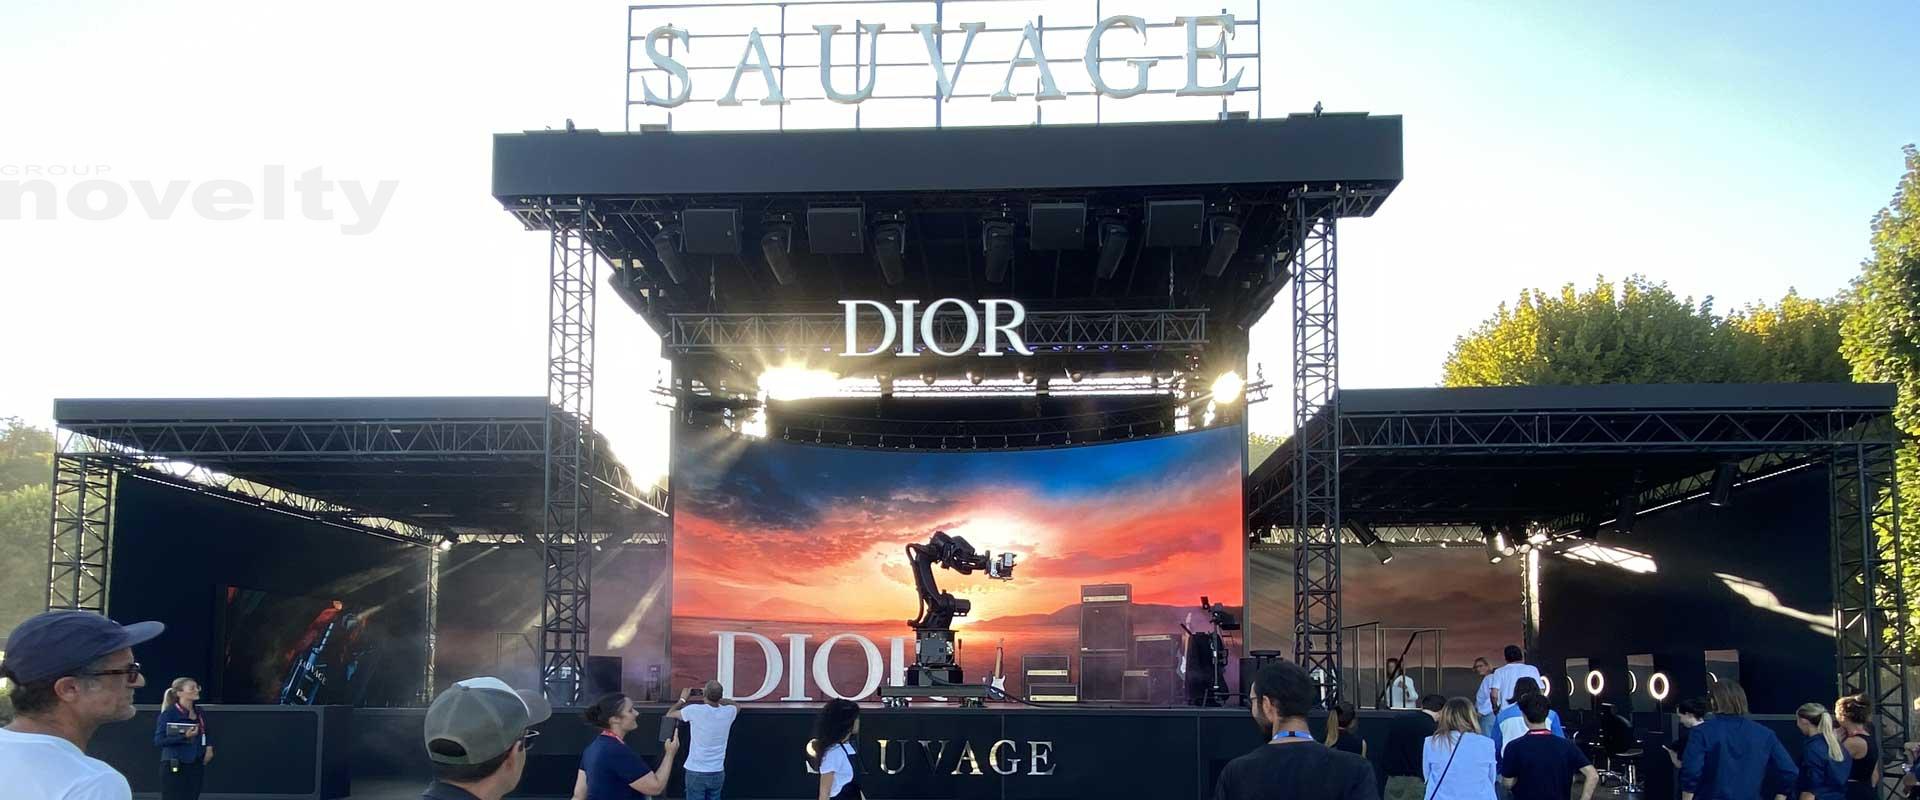 Visuel Novelty en technique pour la scène Dior à Rock en Seine 